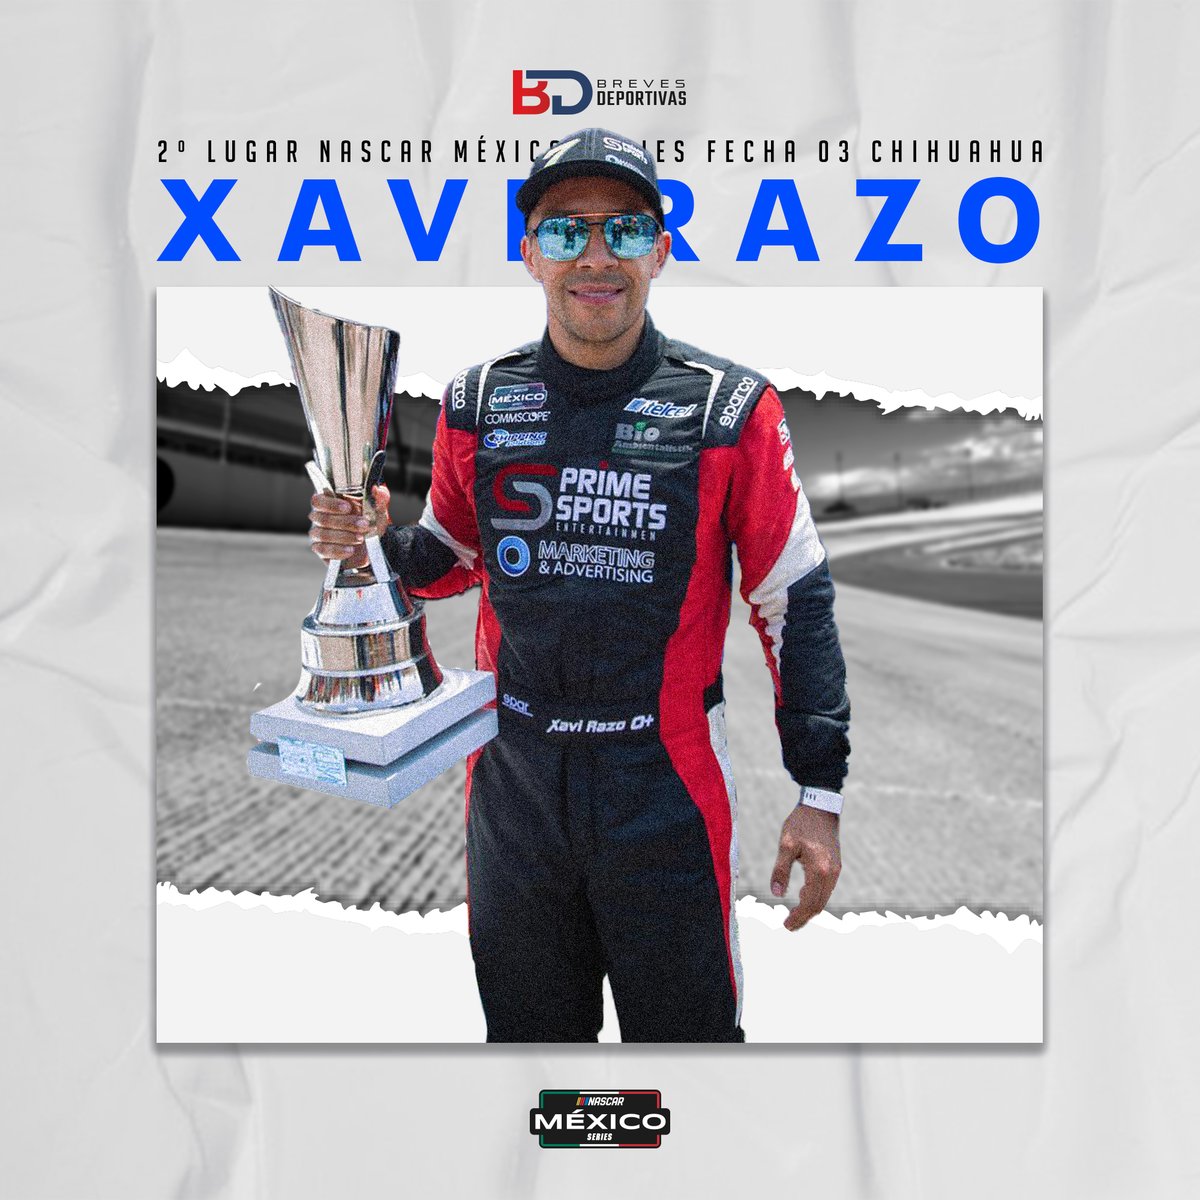 🏁🏎 ¡Arriba y adelante! ¡Felicitaciones a @XaviRazo por obtener el segundo lugar en la carrera de este fin de semana y nuevamente colocarse como líder en el campeonato! 🏆 #NASCARMéxico #ElDoradoSpeedway #CarreraNocturna #chihuahua